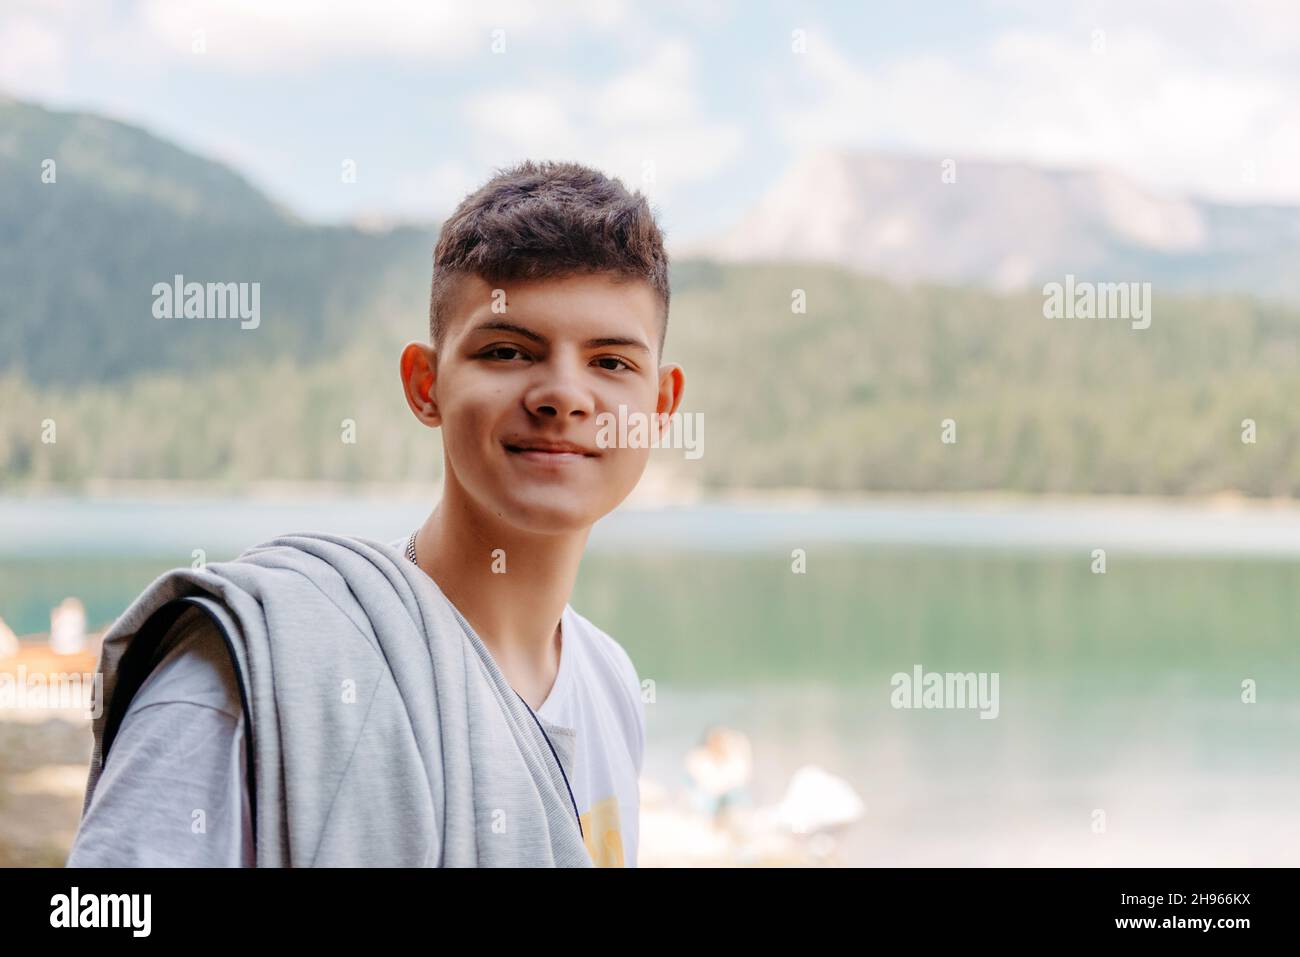 Porträt eines Mannes auf dem Hintergrund eines Bergsees. Stockfoto